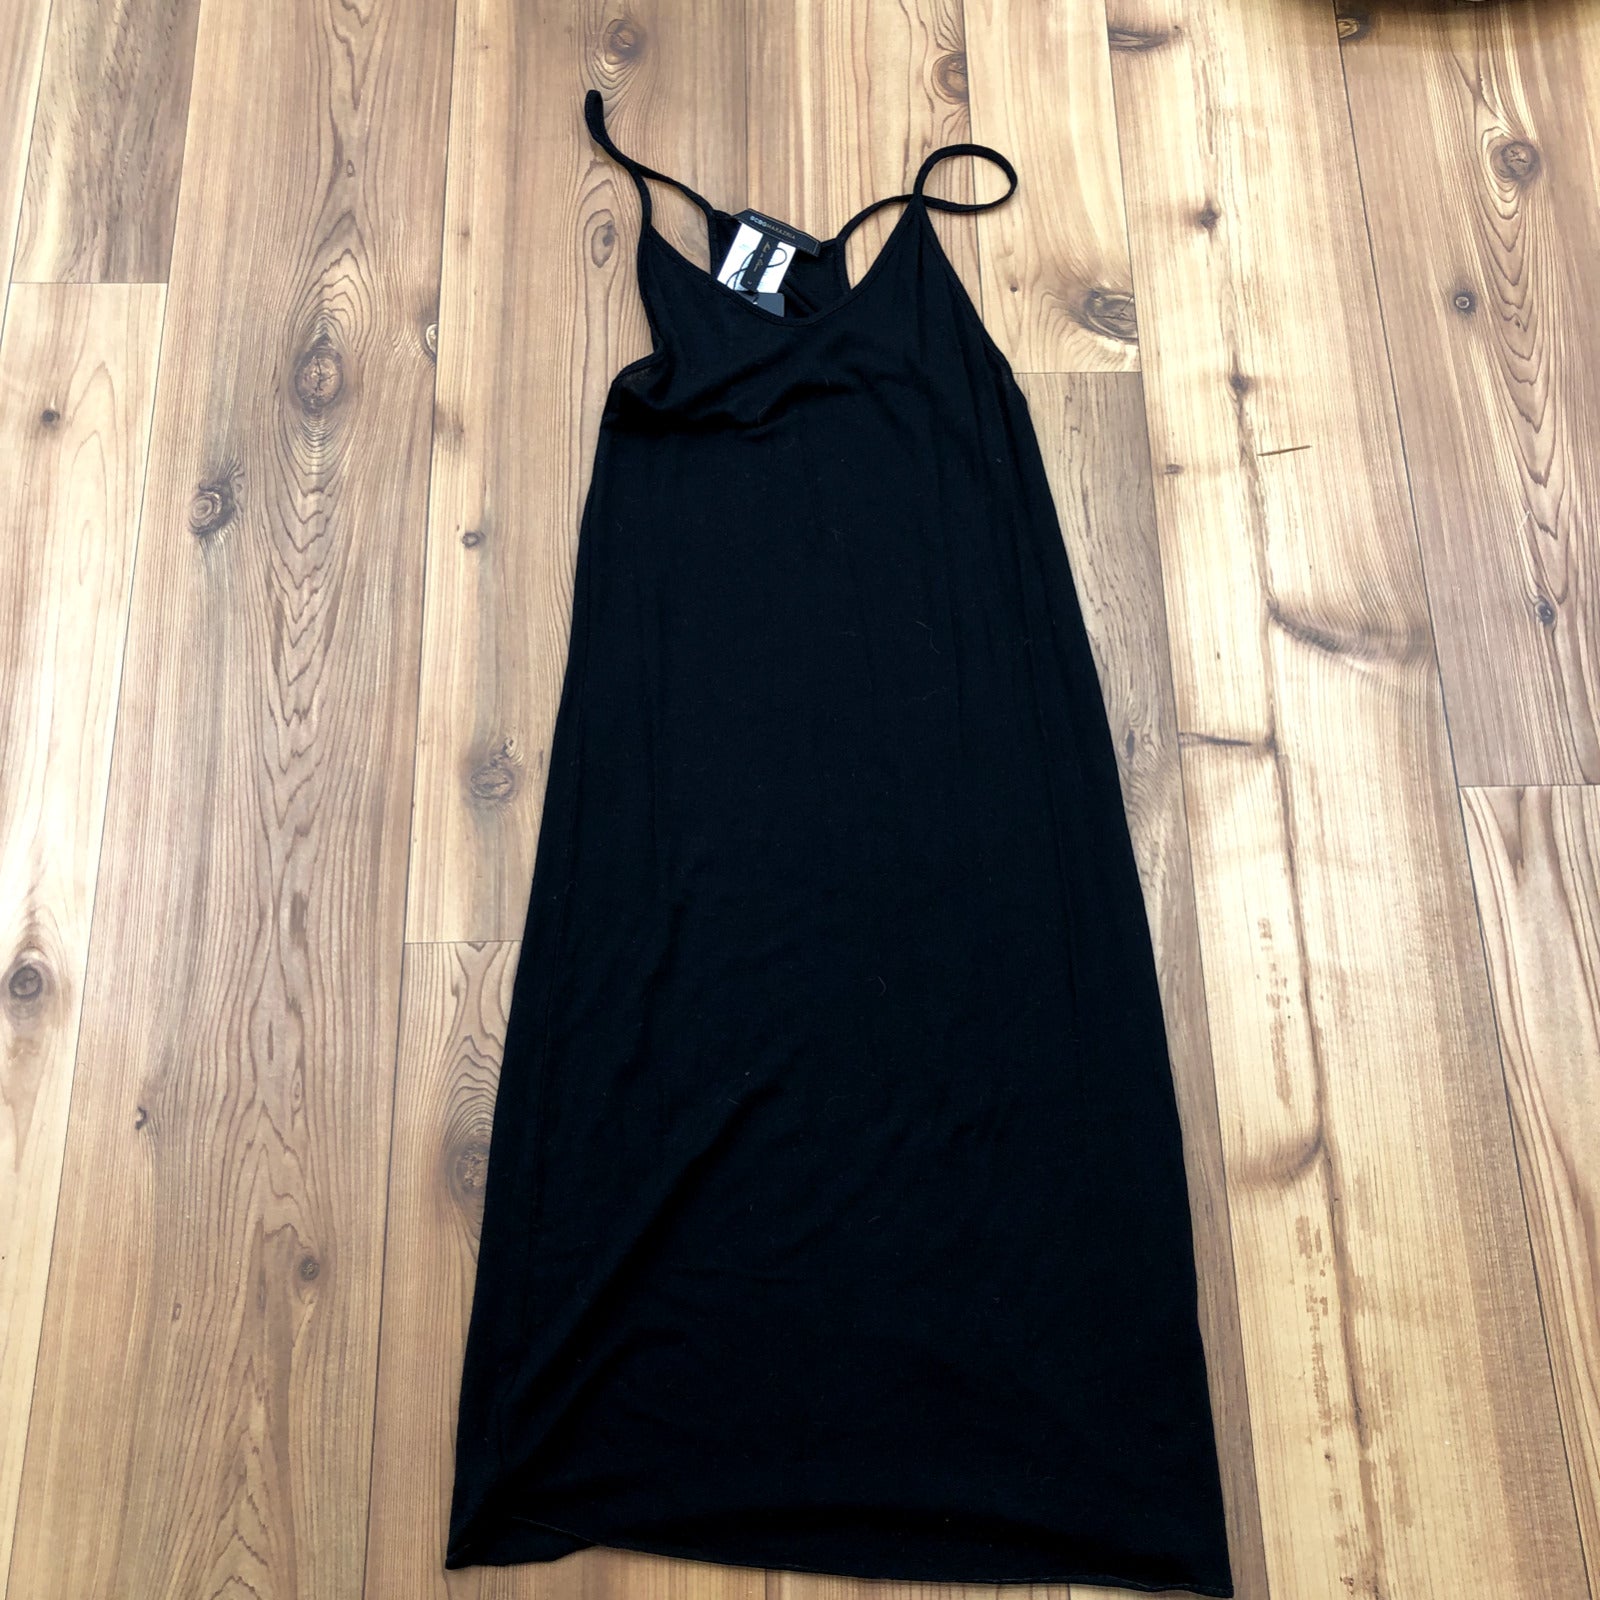 New BCBG Max Azria Black Spaghetti Strap Body Con Dress Women's Size M